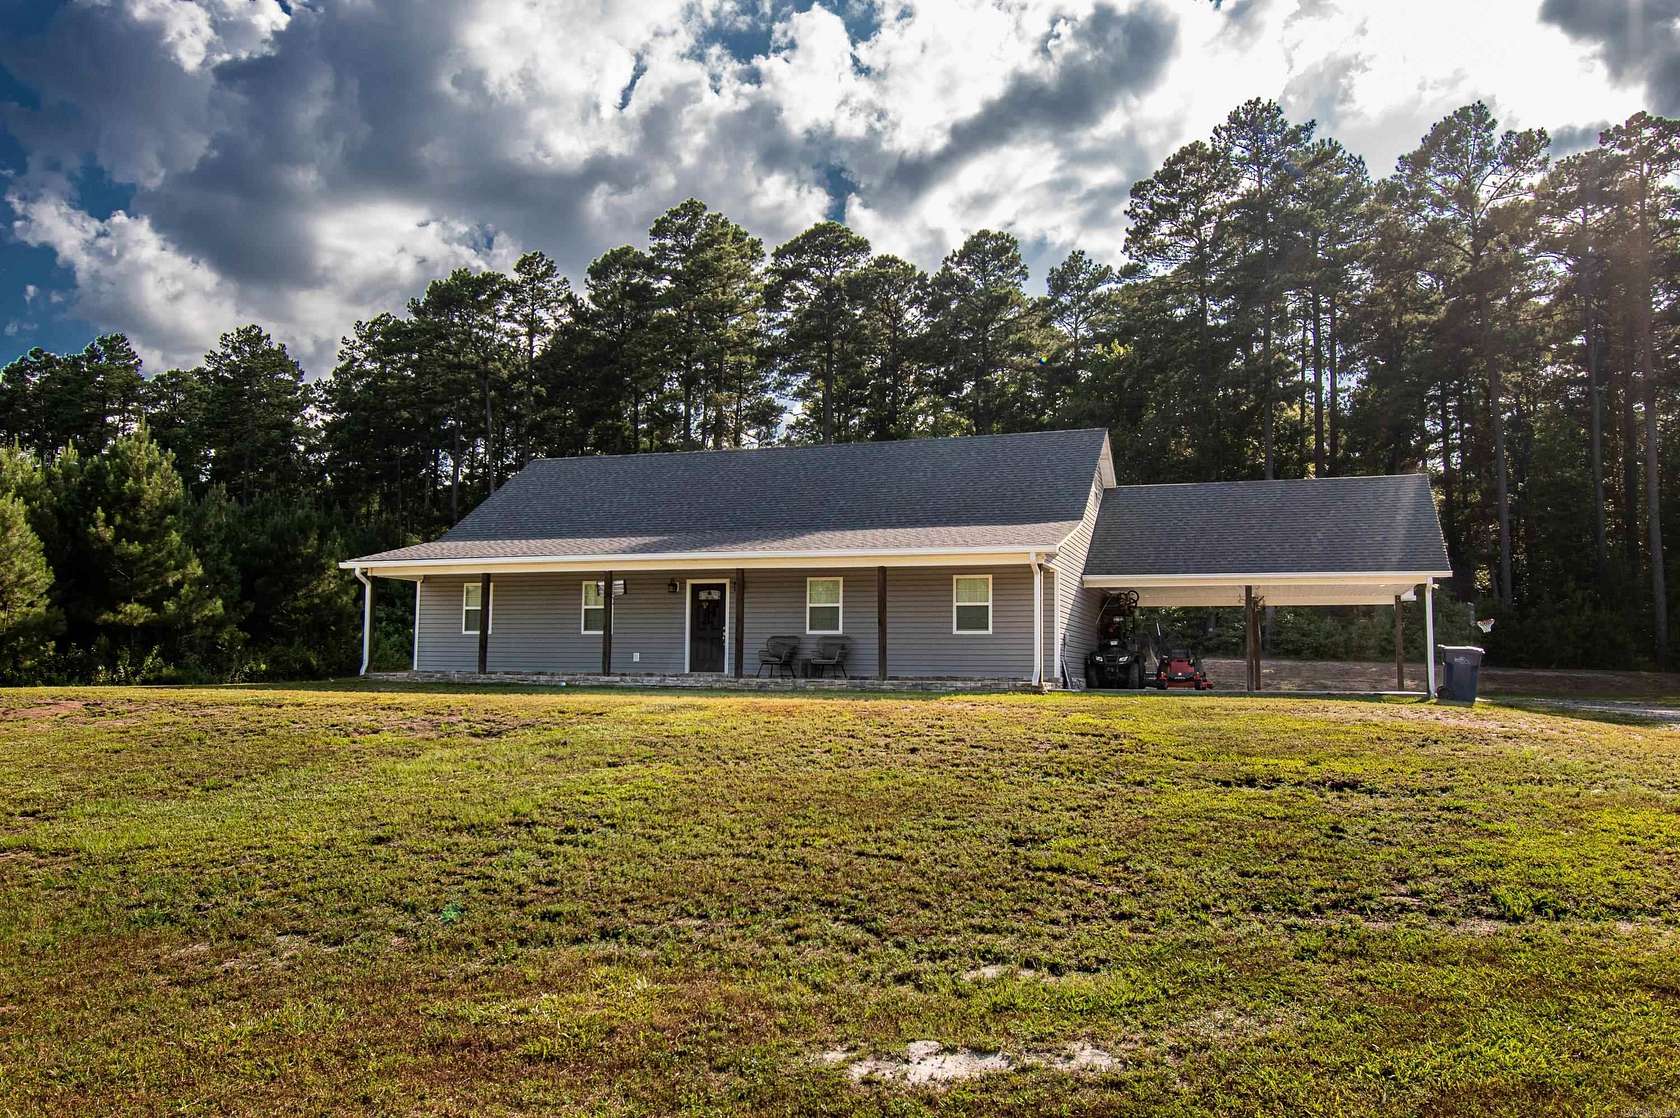 19.24 Acres of Land with Home for Sale in El Dorado, Arkansas